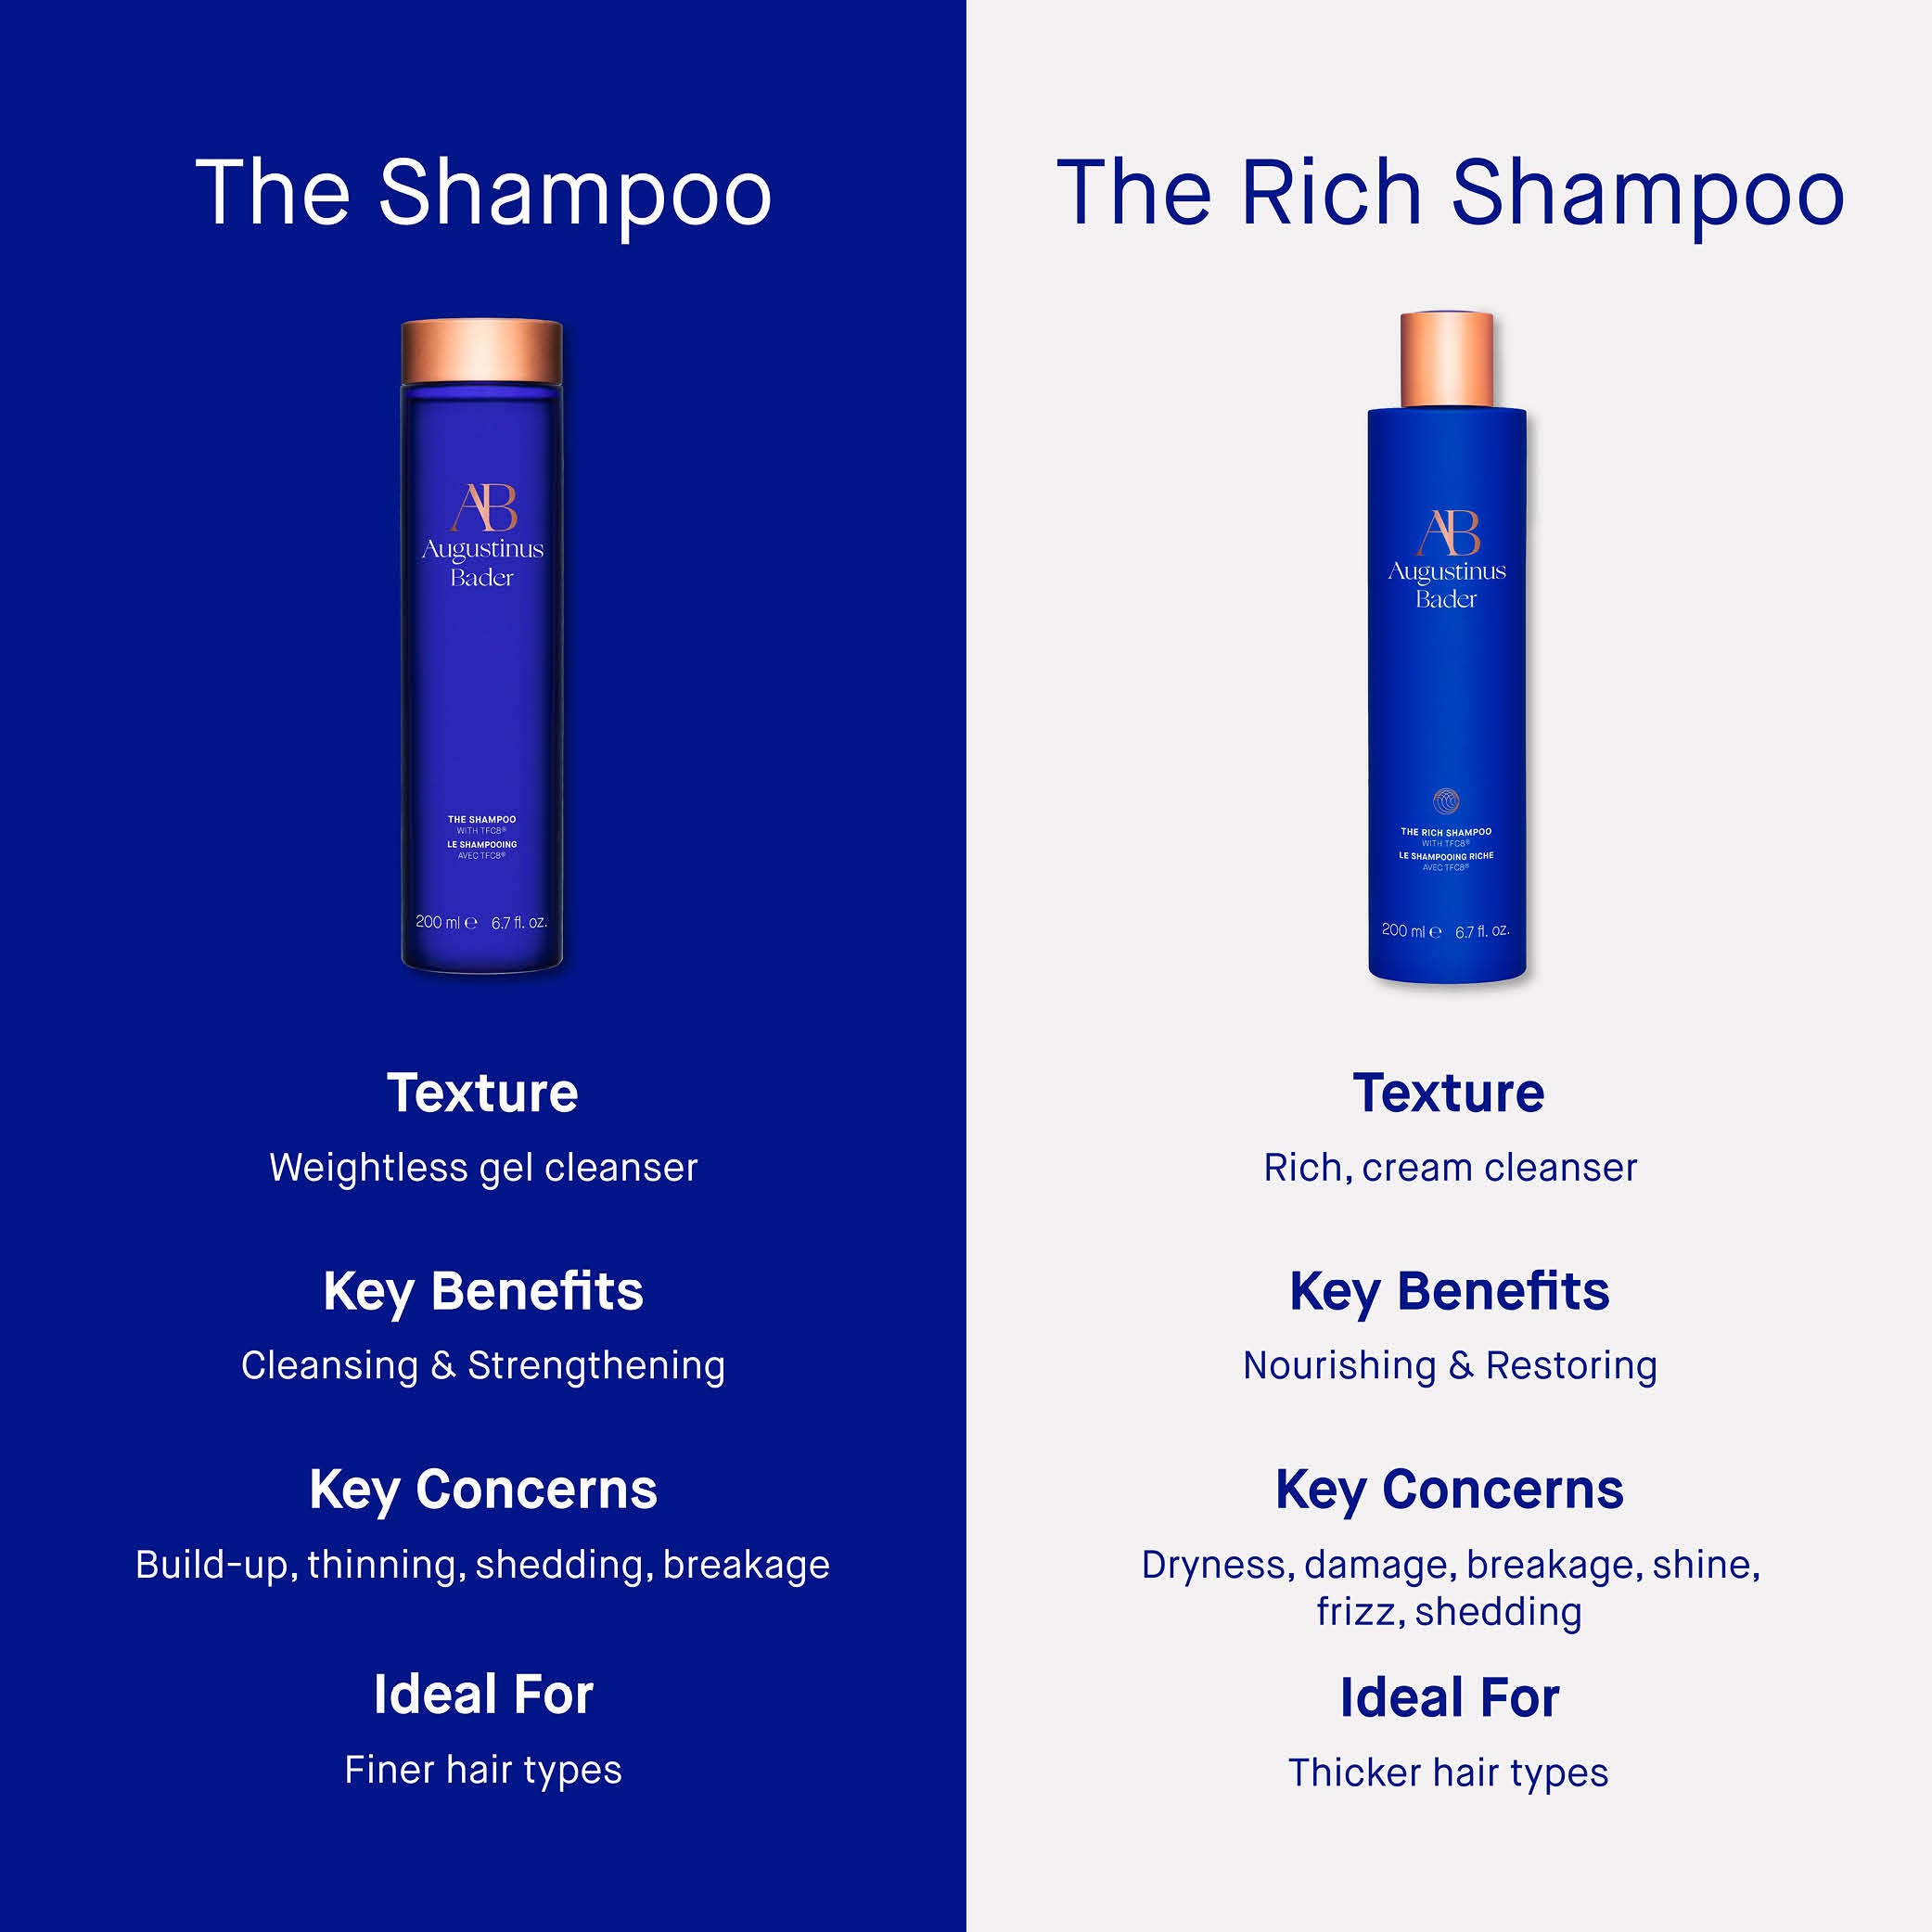 The Rich Shampoo